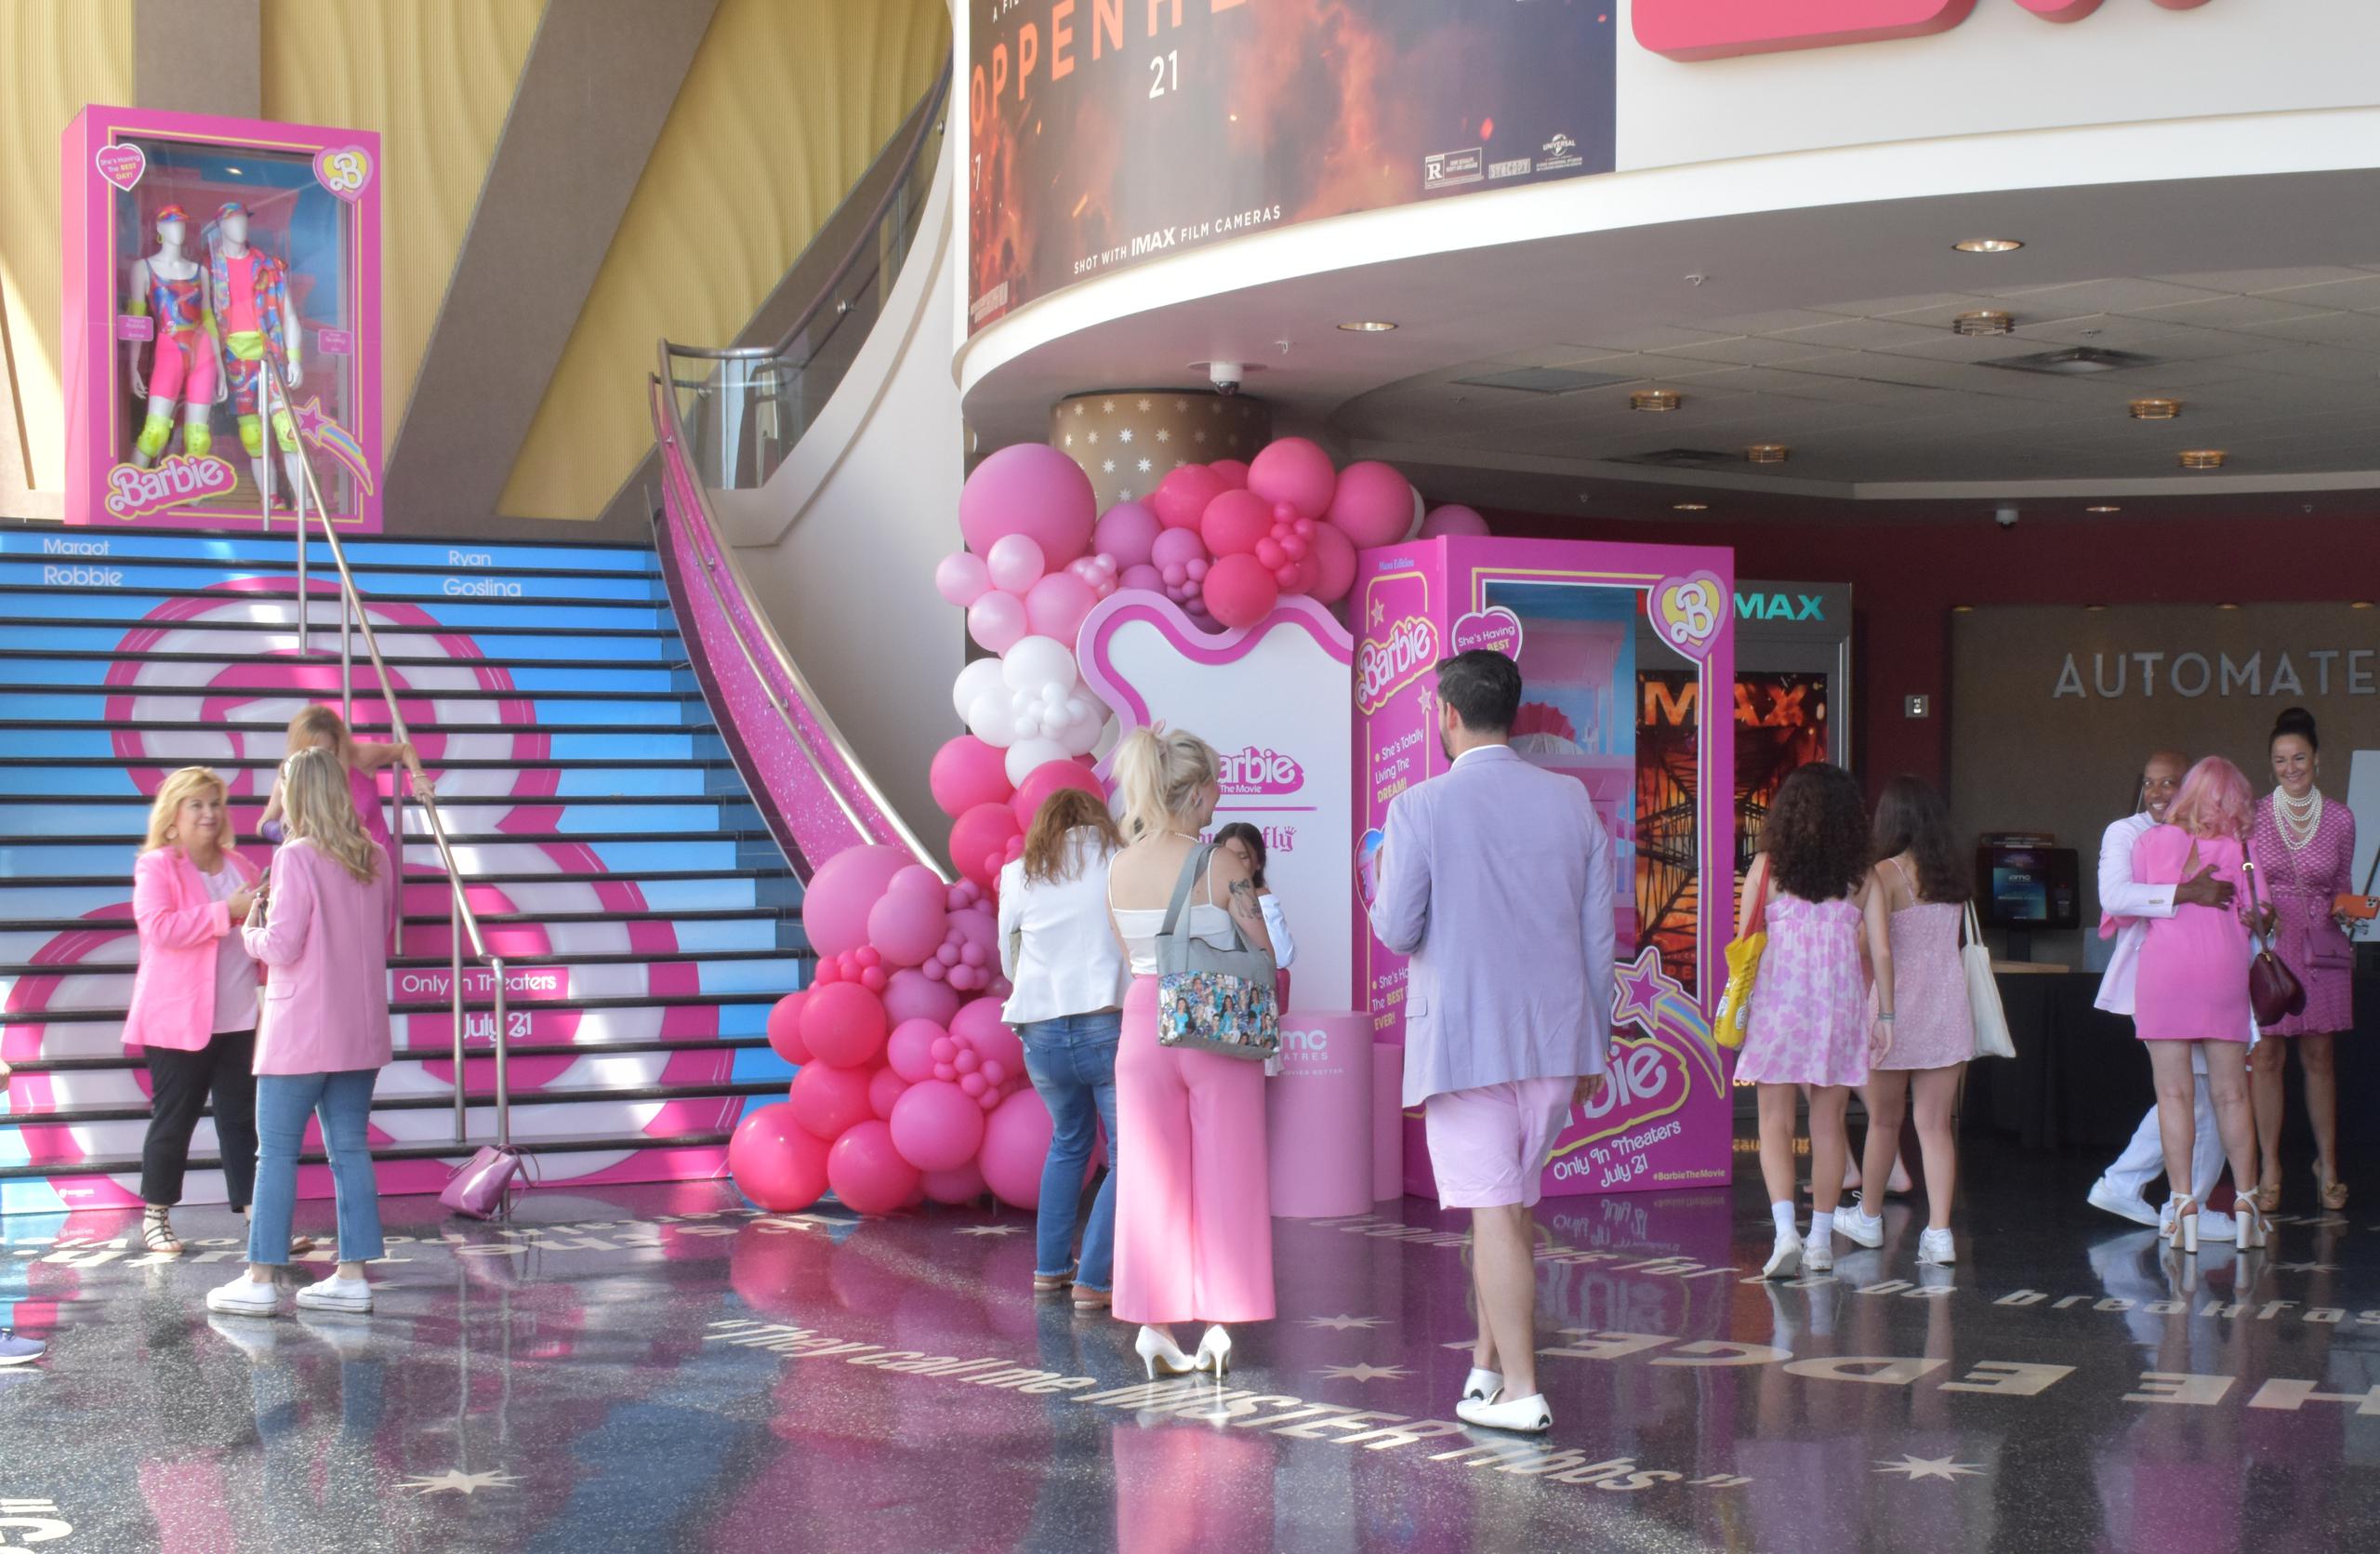 Fanáticos llegan a ver el filme "Barbie" el 20 de julio de 2023, en un cine de Los Ángeles (EFE/ Mónica Rubalcava)